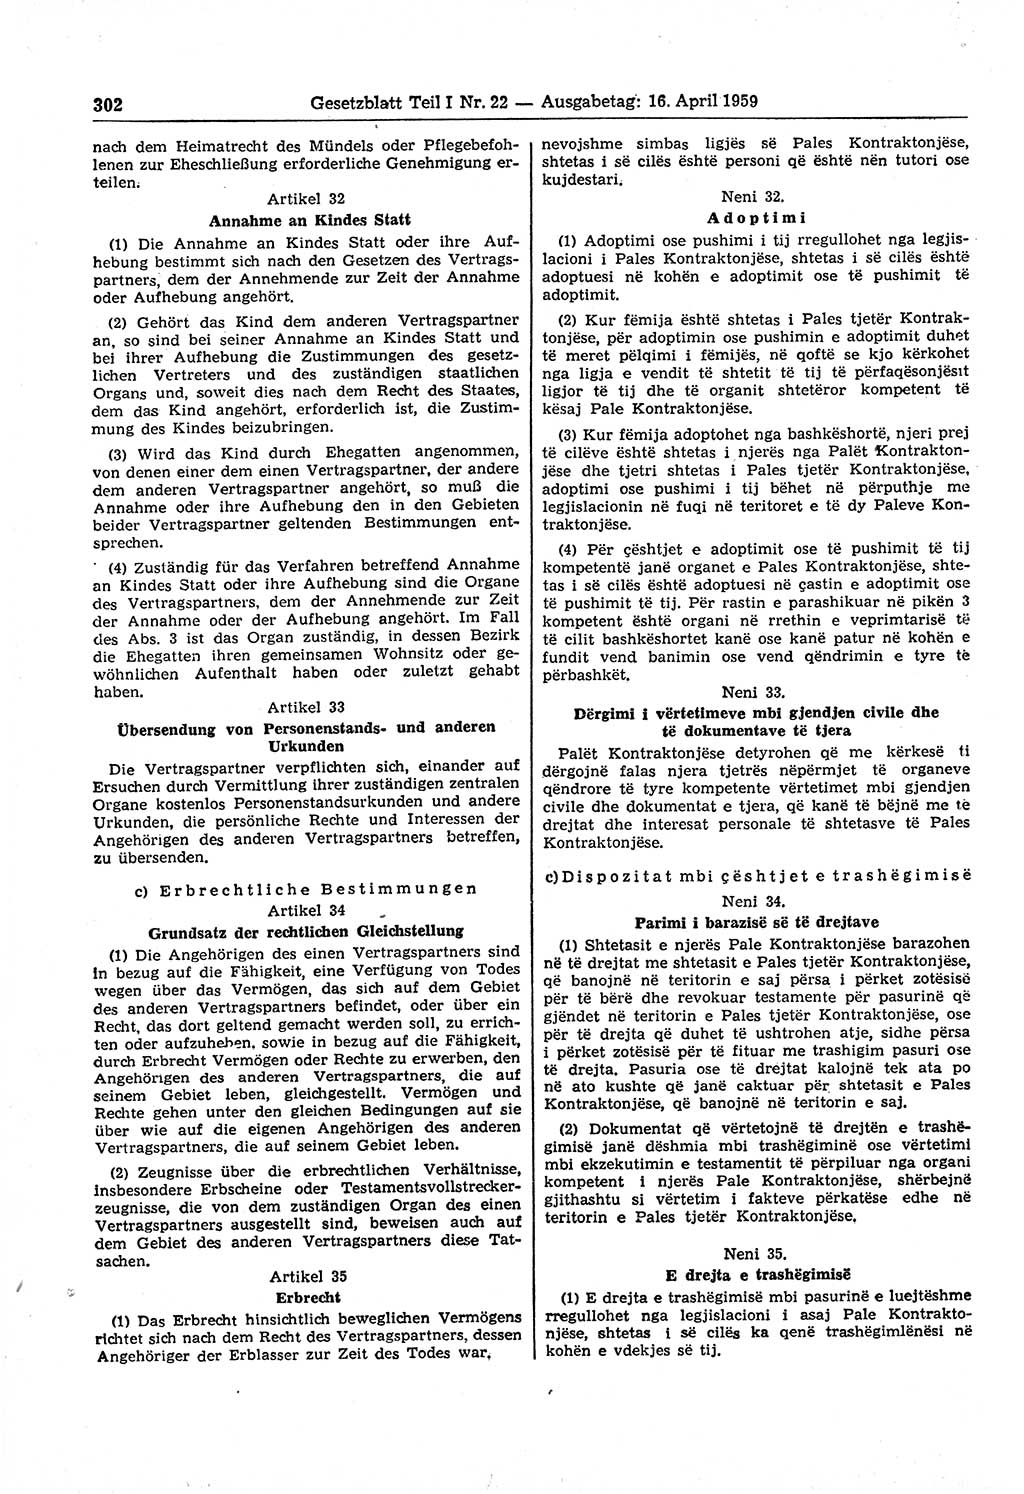 Gesetzblatt (GBl.) der Deutschen Demokratischen Republik (DDR) Teil Ⅰ 1959, Seite 302 (GBl. DDR Ⅰ 1959, S. 302)